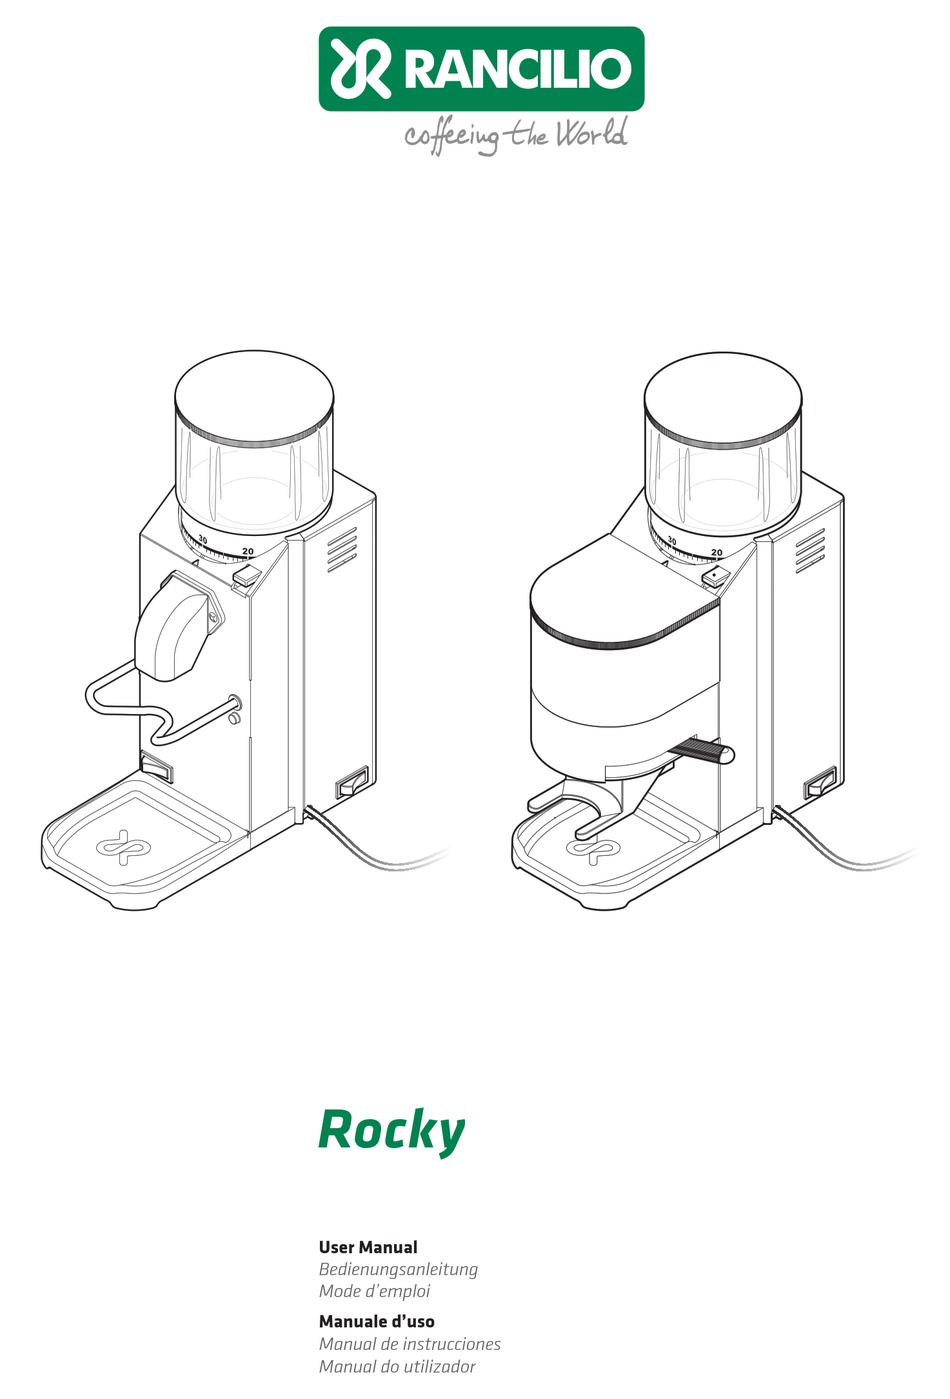 RANCILIO ROCKY USER MANUAL Pdf Download | ManualsLib